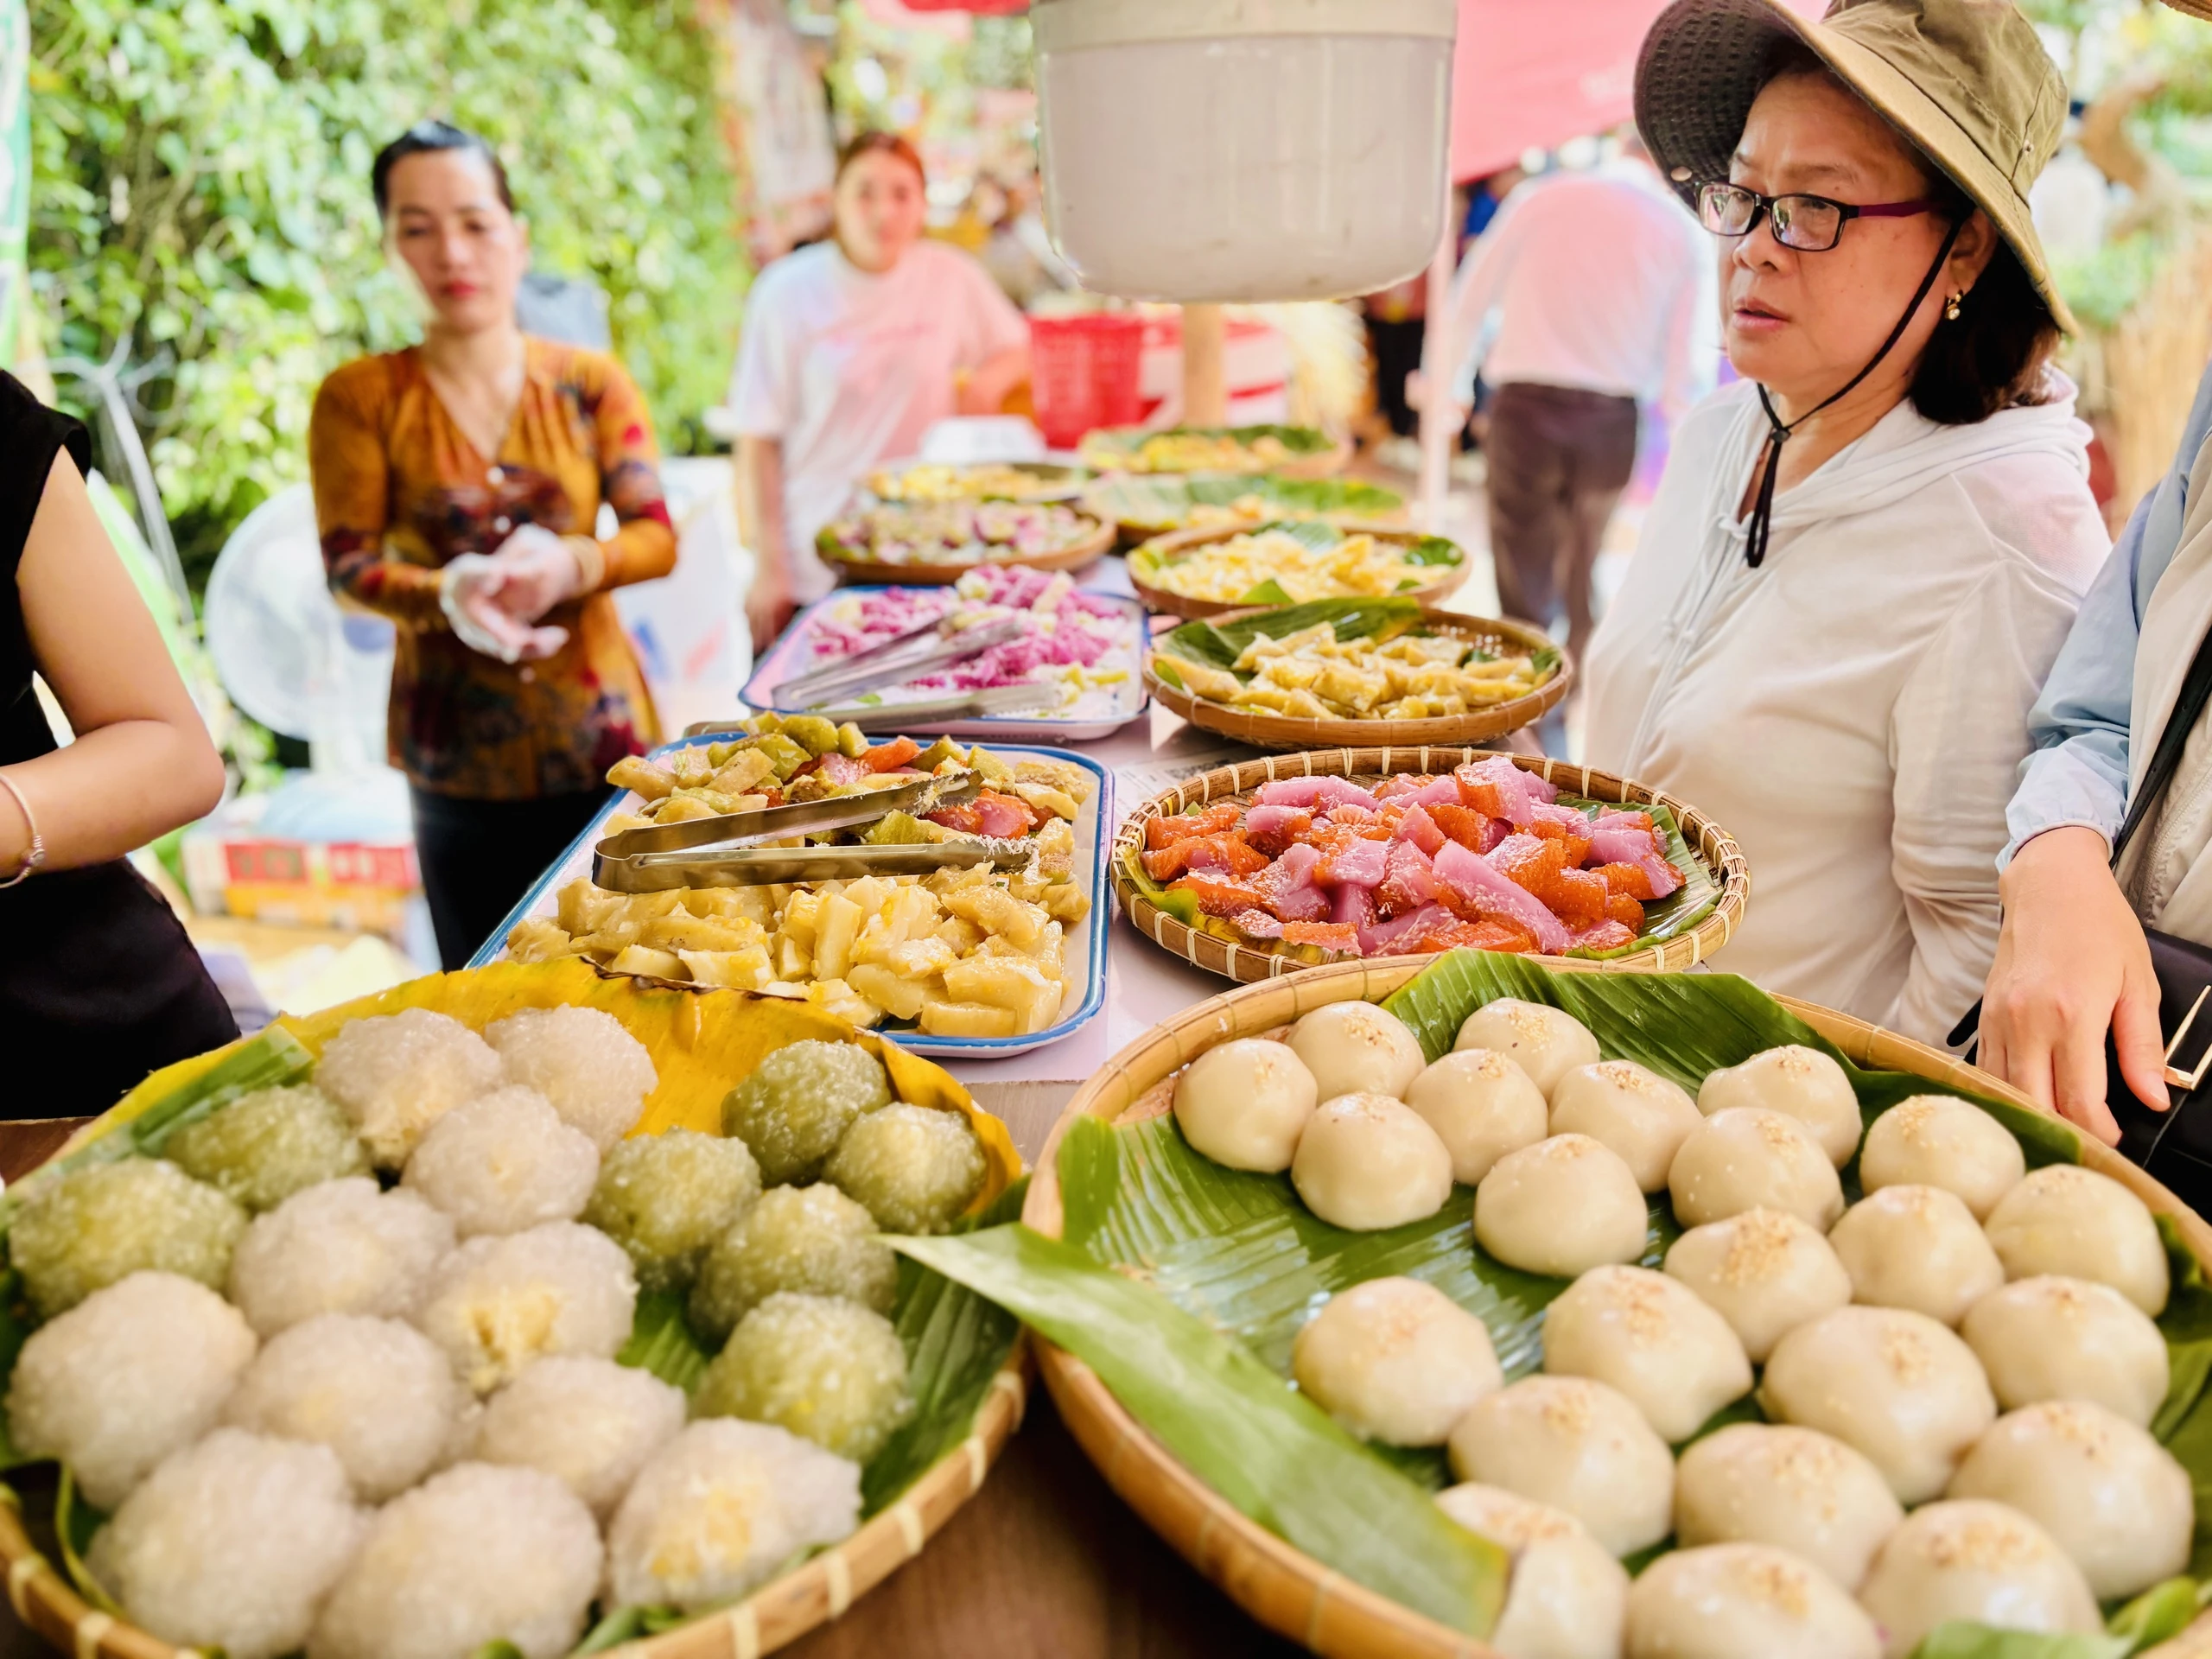 Chật kín người ở lễ hội ẩm thực mừng sinh nhật Thảo Cầm Viên 160 tuổi